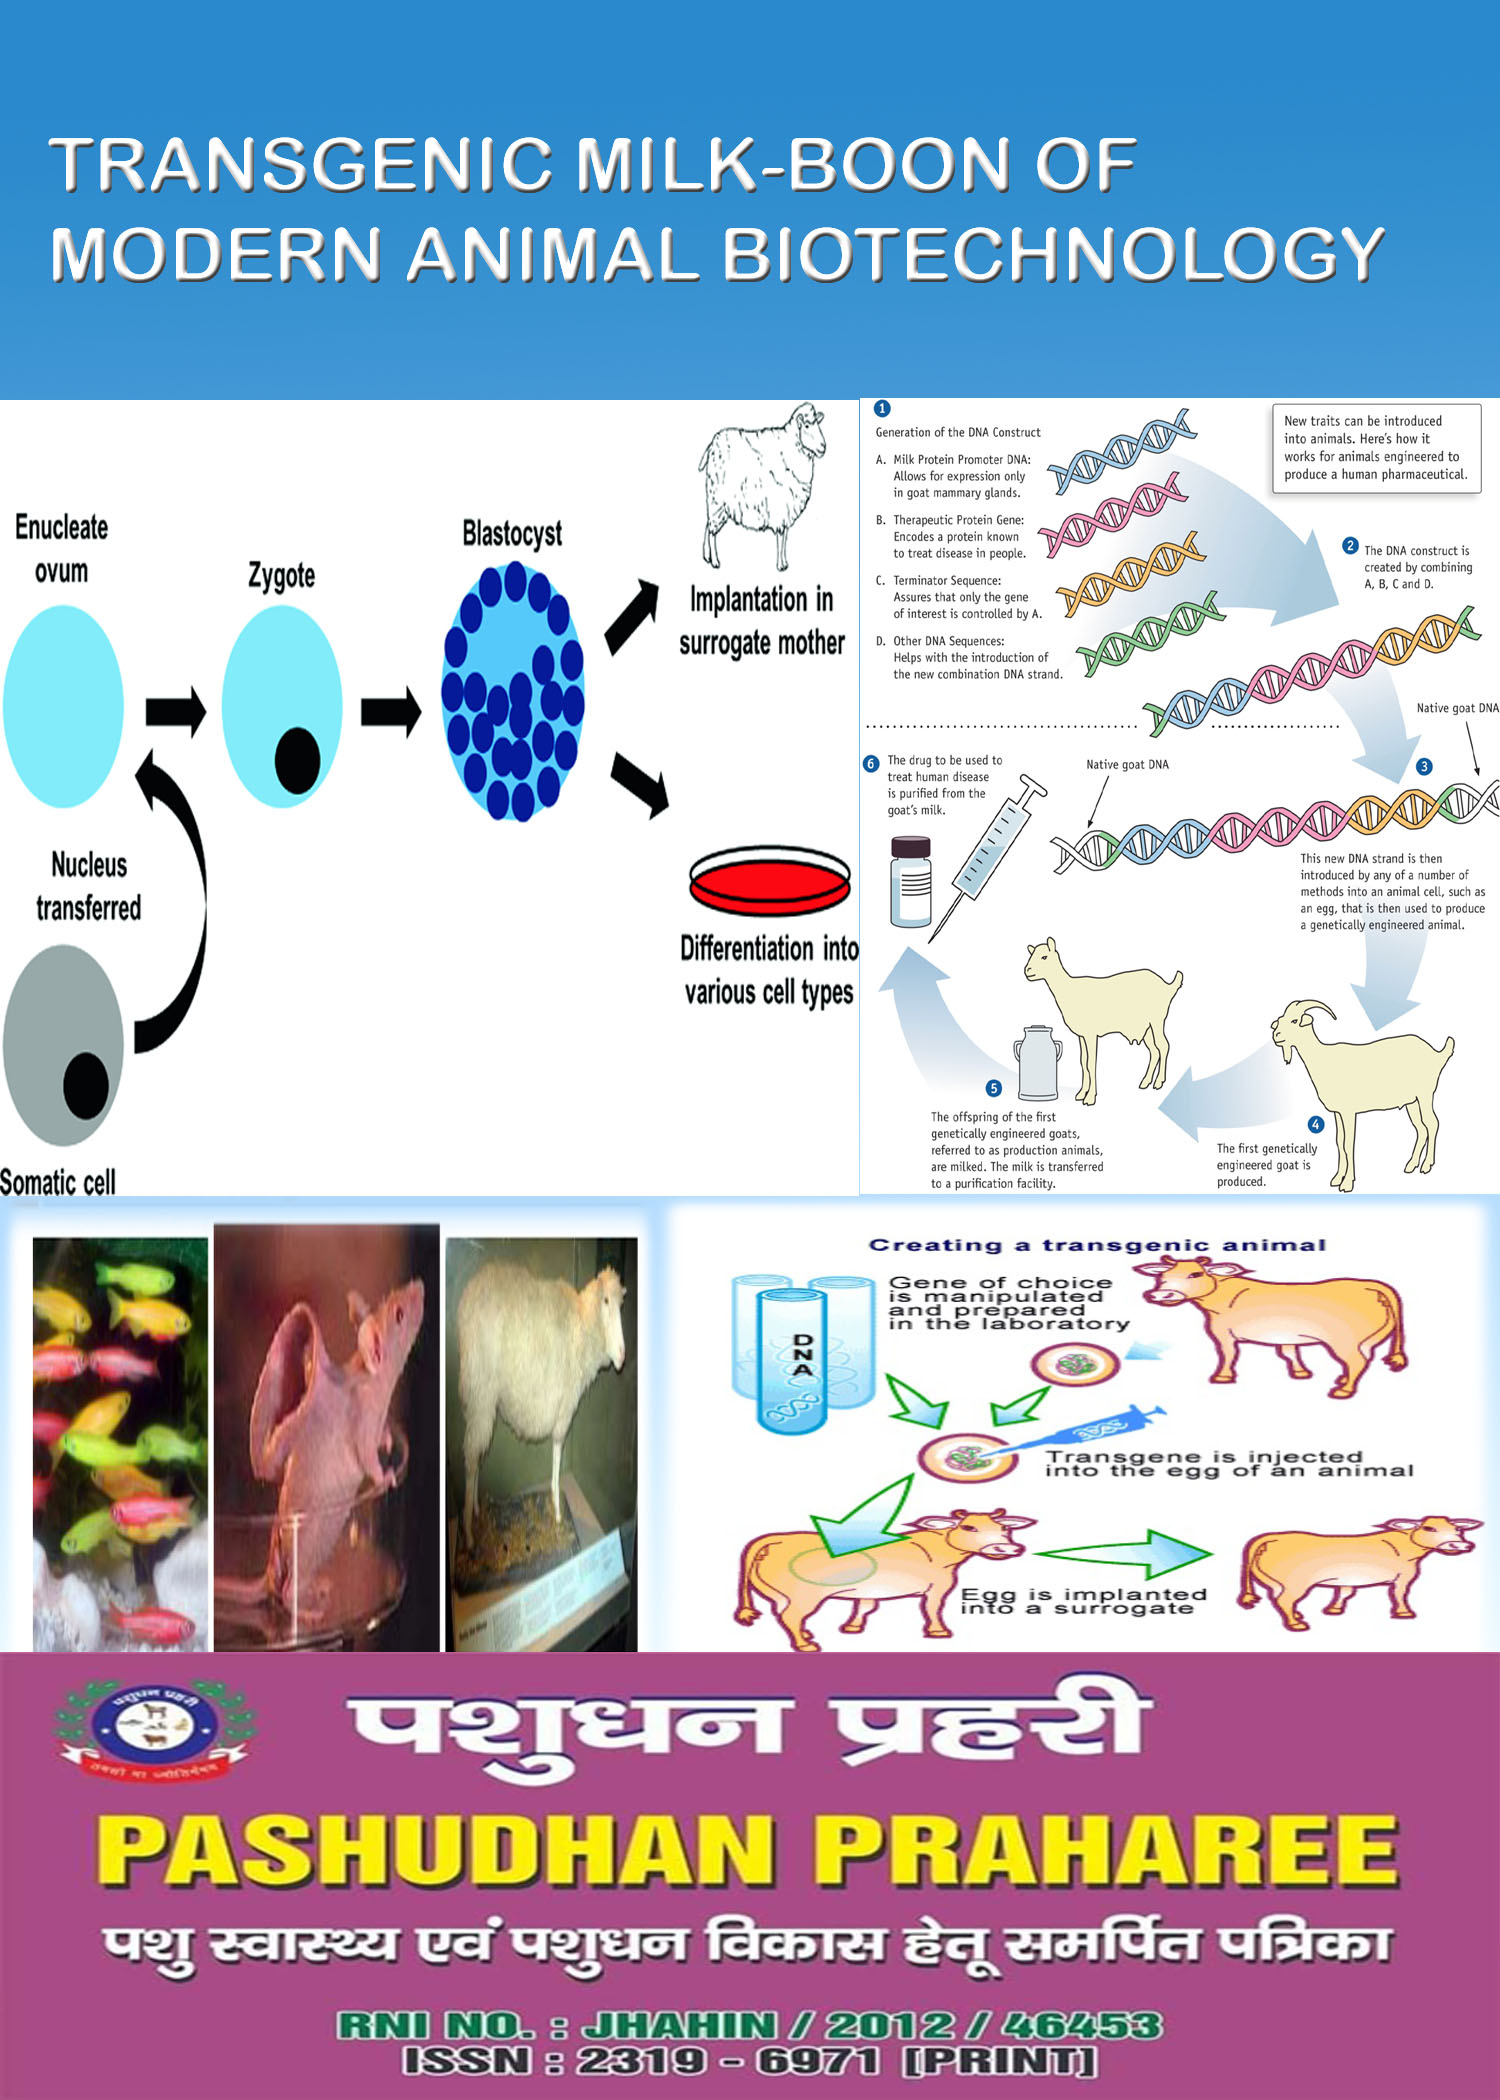 TRANSGENIC MILK-BOON OF MODERN ANIMAL BIOTECHNOLOGY – Pashudhan praharee